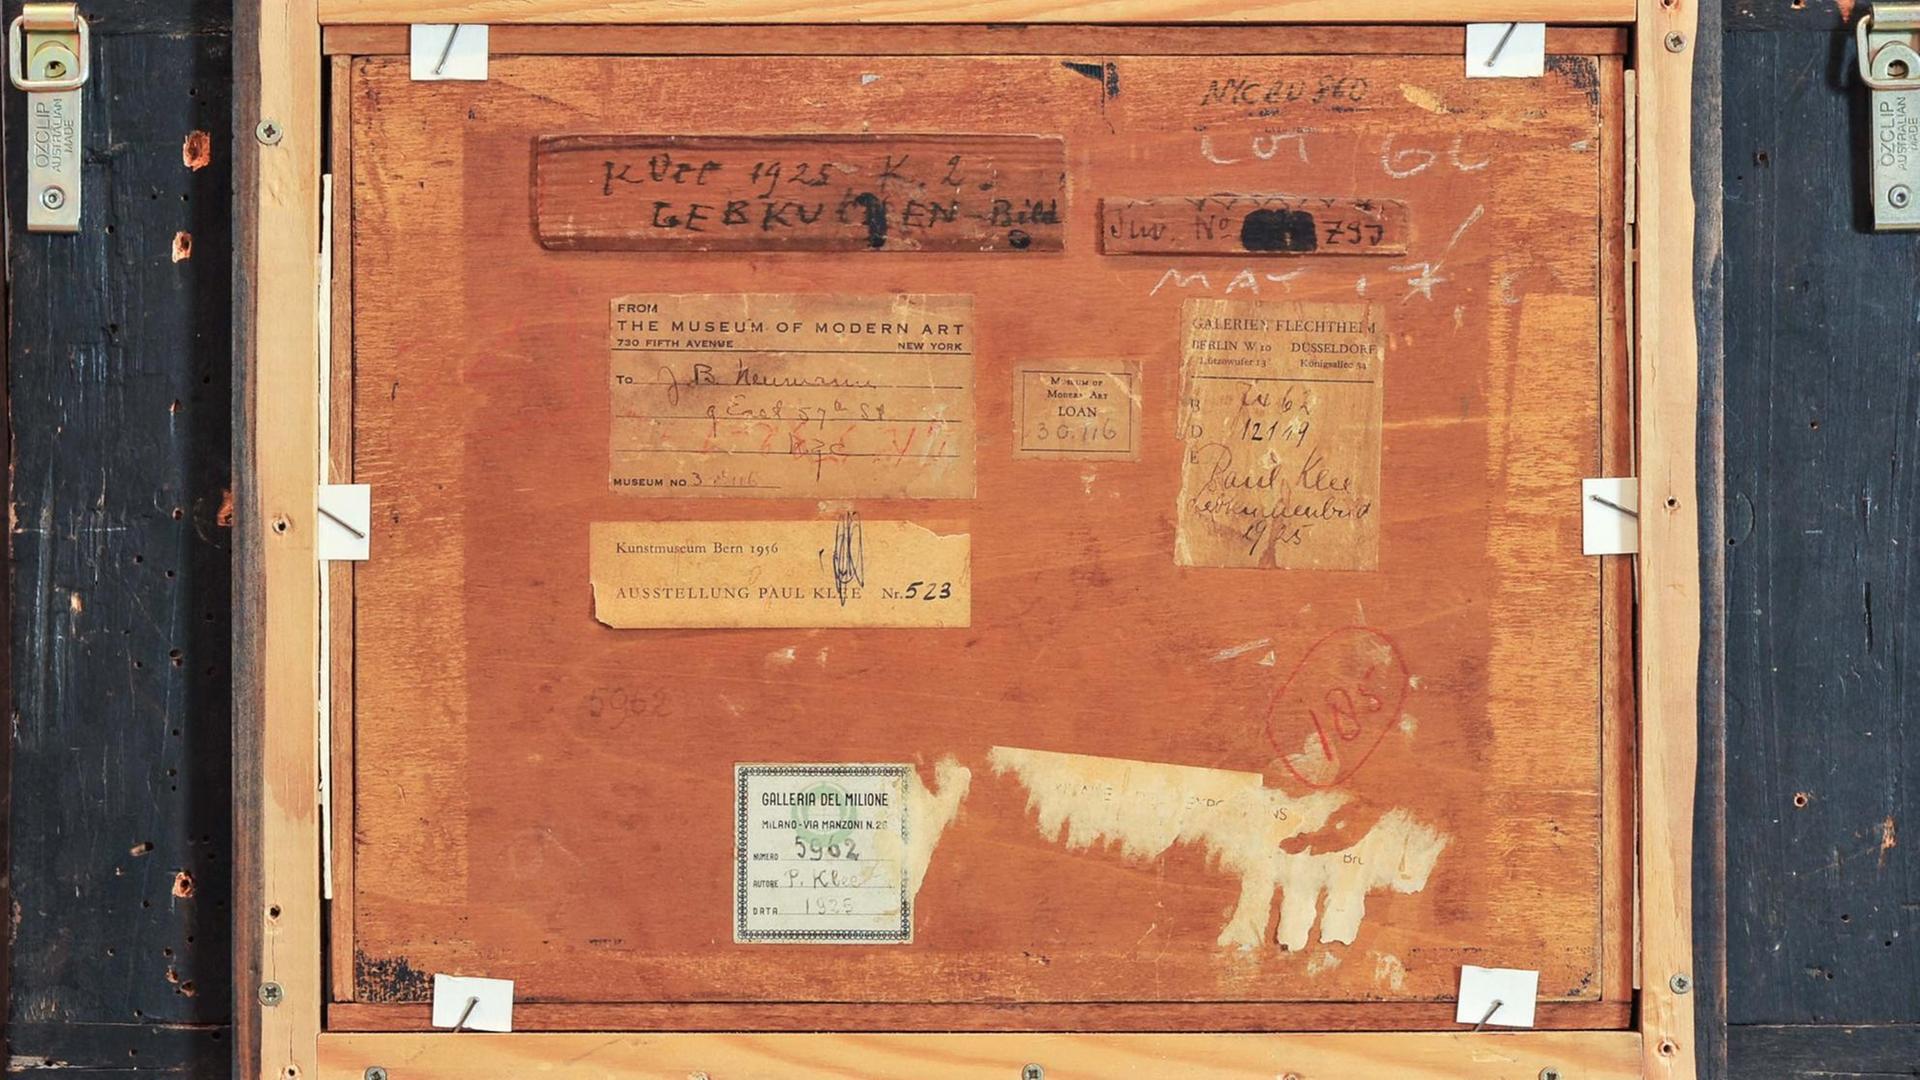 Die Rückseite von Paul Klee’s "Lebkuchenbild" mit Provenienzhinweisen. Foto: Andres Kilger